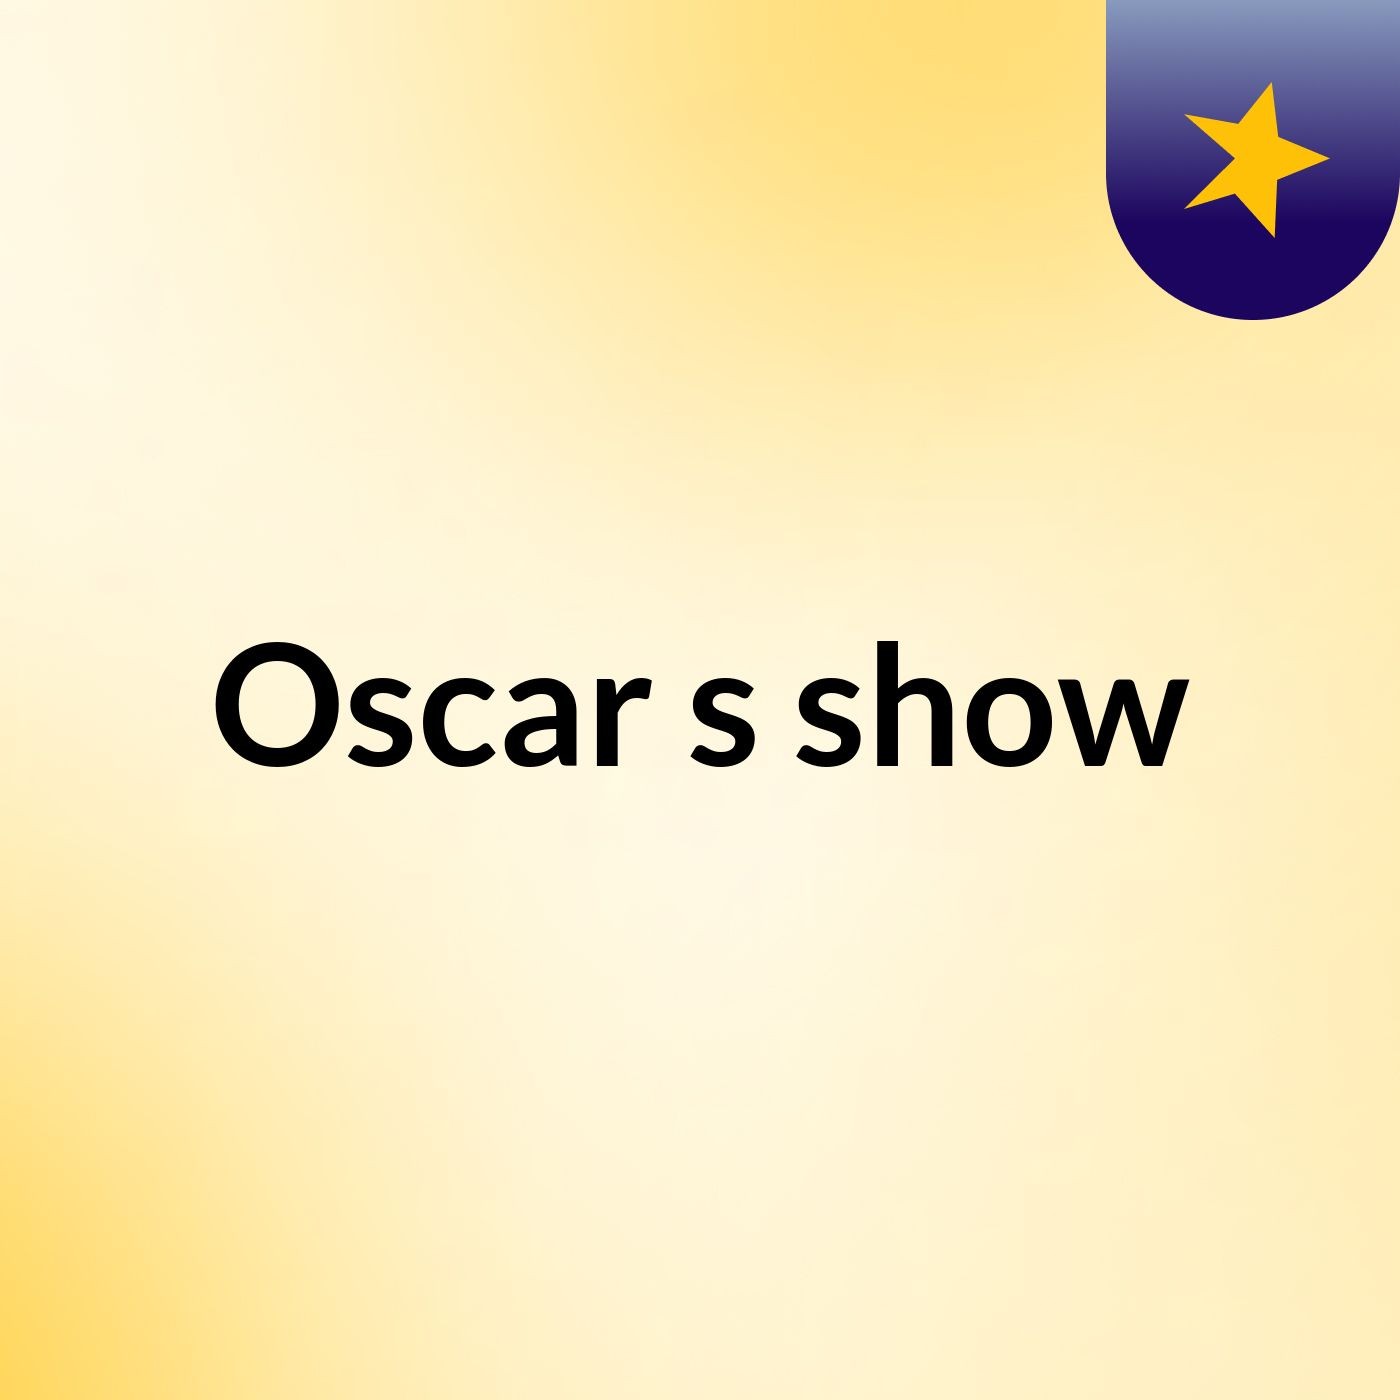 Oscar's show